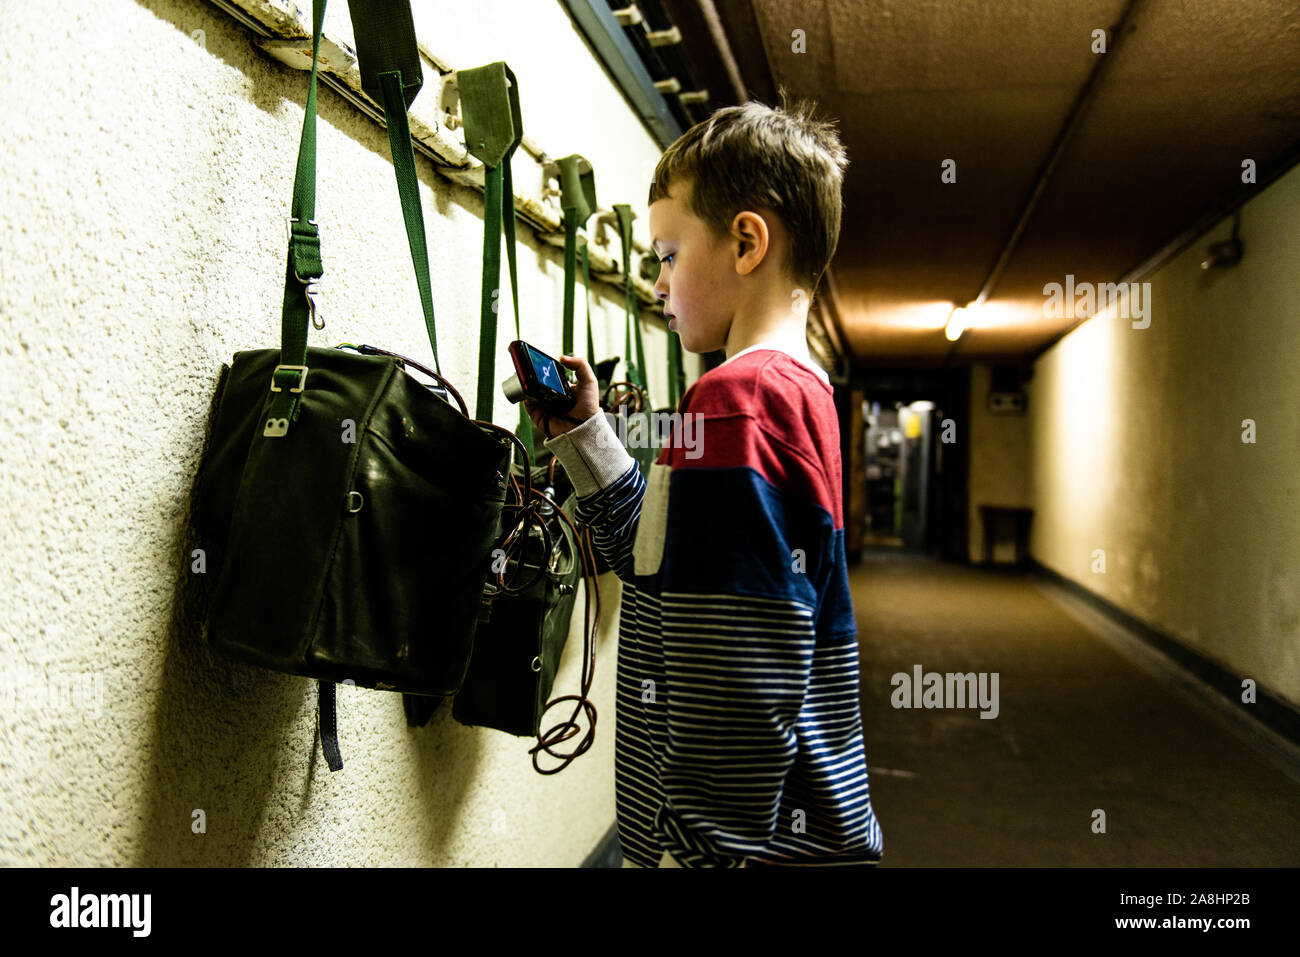 Ein Junge nimmt Bilder im Kelvedon Hatch secret Nuclear Bunker Eingang Tunnel. Altmodische Säcke und Radios an der Wand Stockfoto